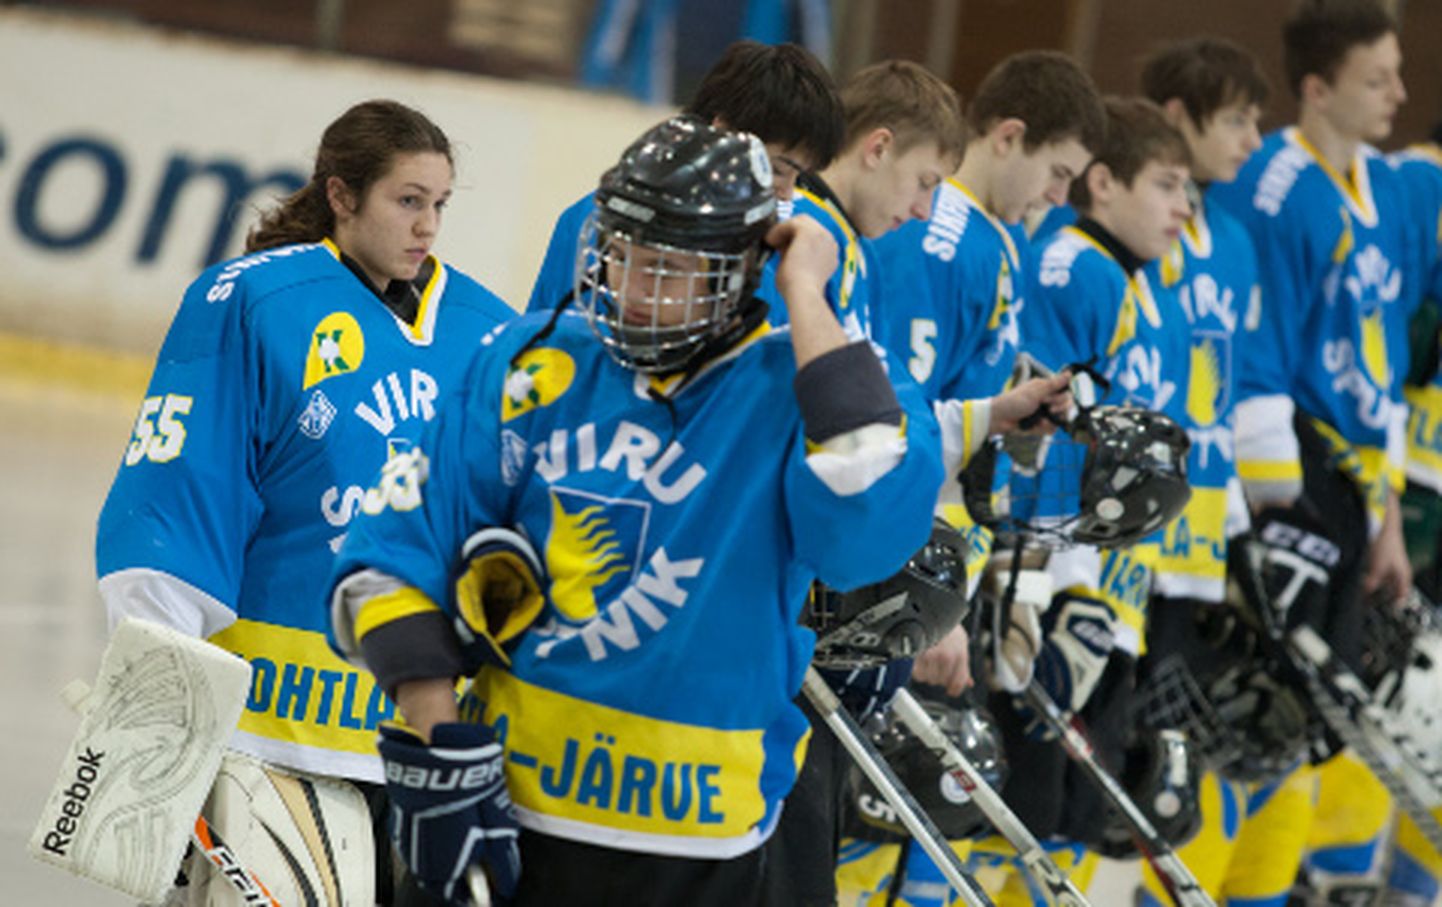 Harukordne ja ajalooline juhtum - 14aastane koolitüdruk osales Eesti meeste jäähoki meistriliiga mängus.